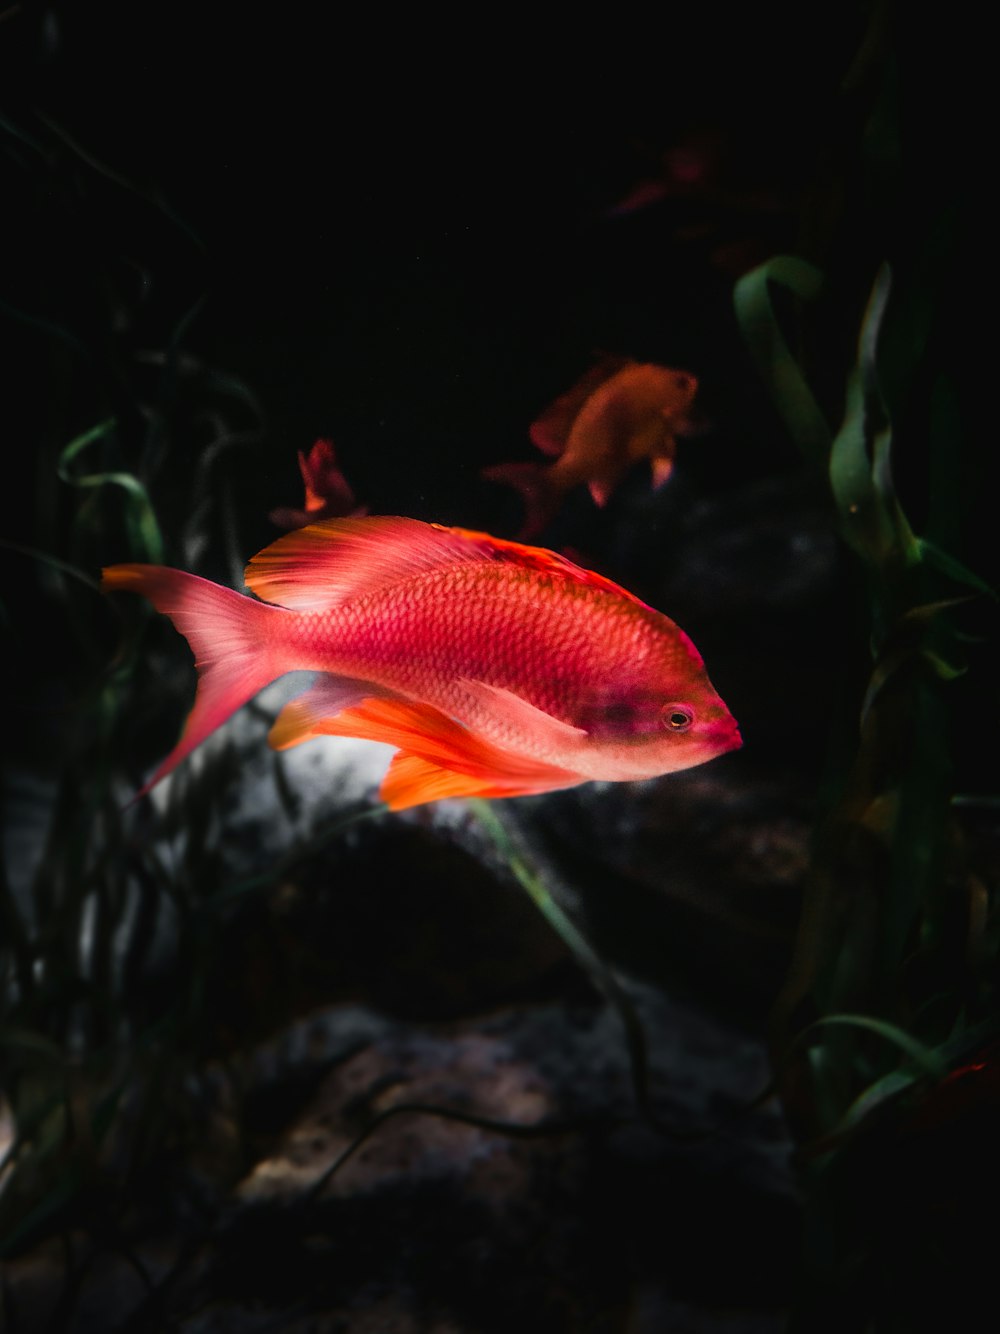 pesce arancione e bianco nell'acquario